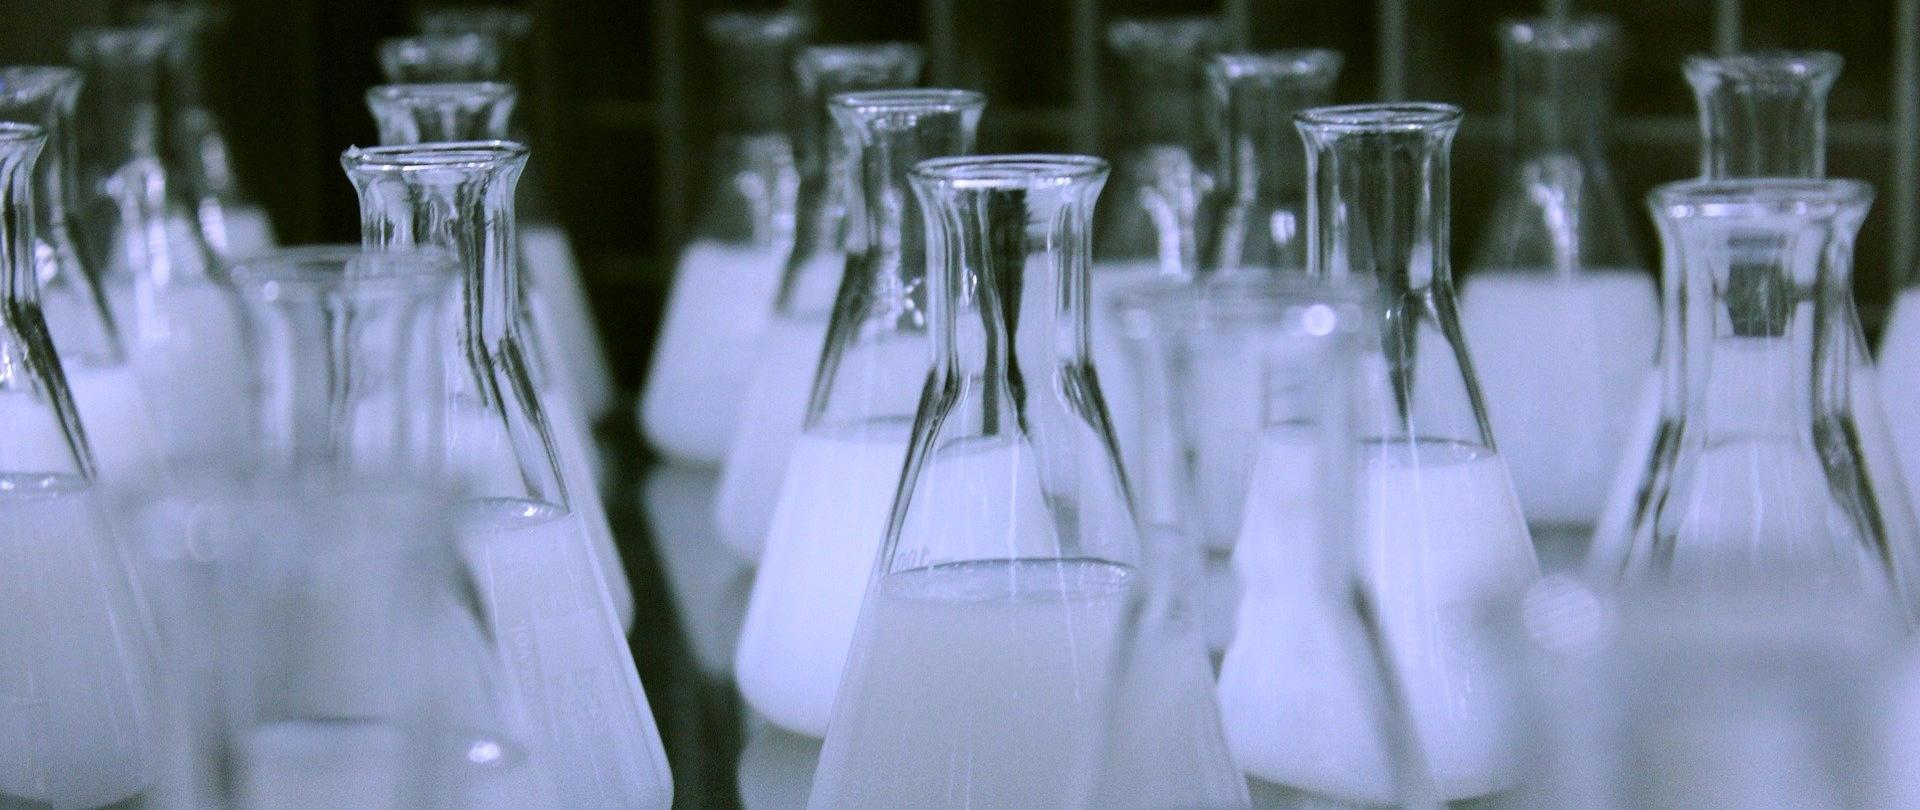 fiolki szklane z płynem w laboratorium